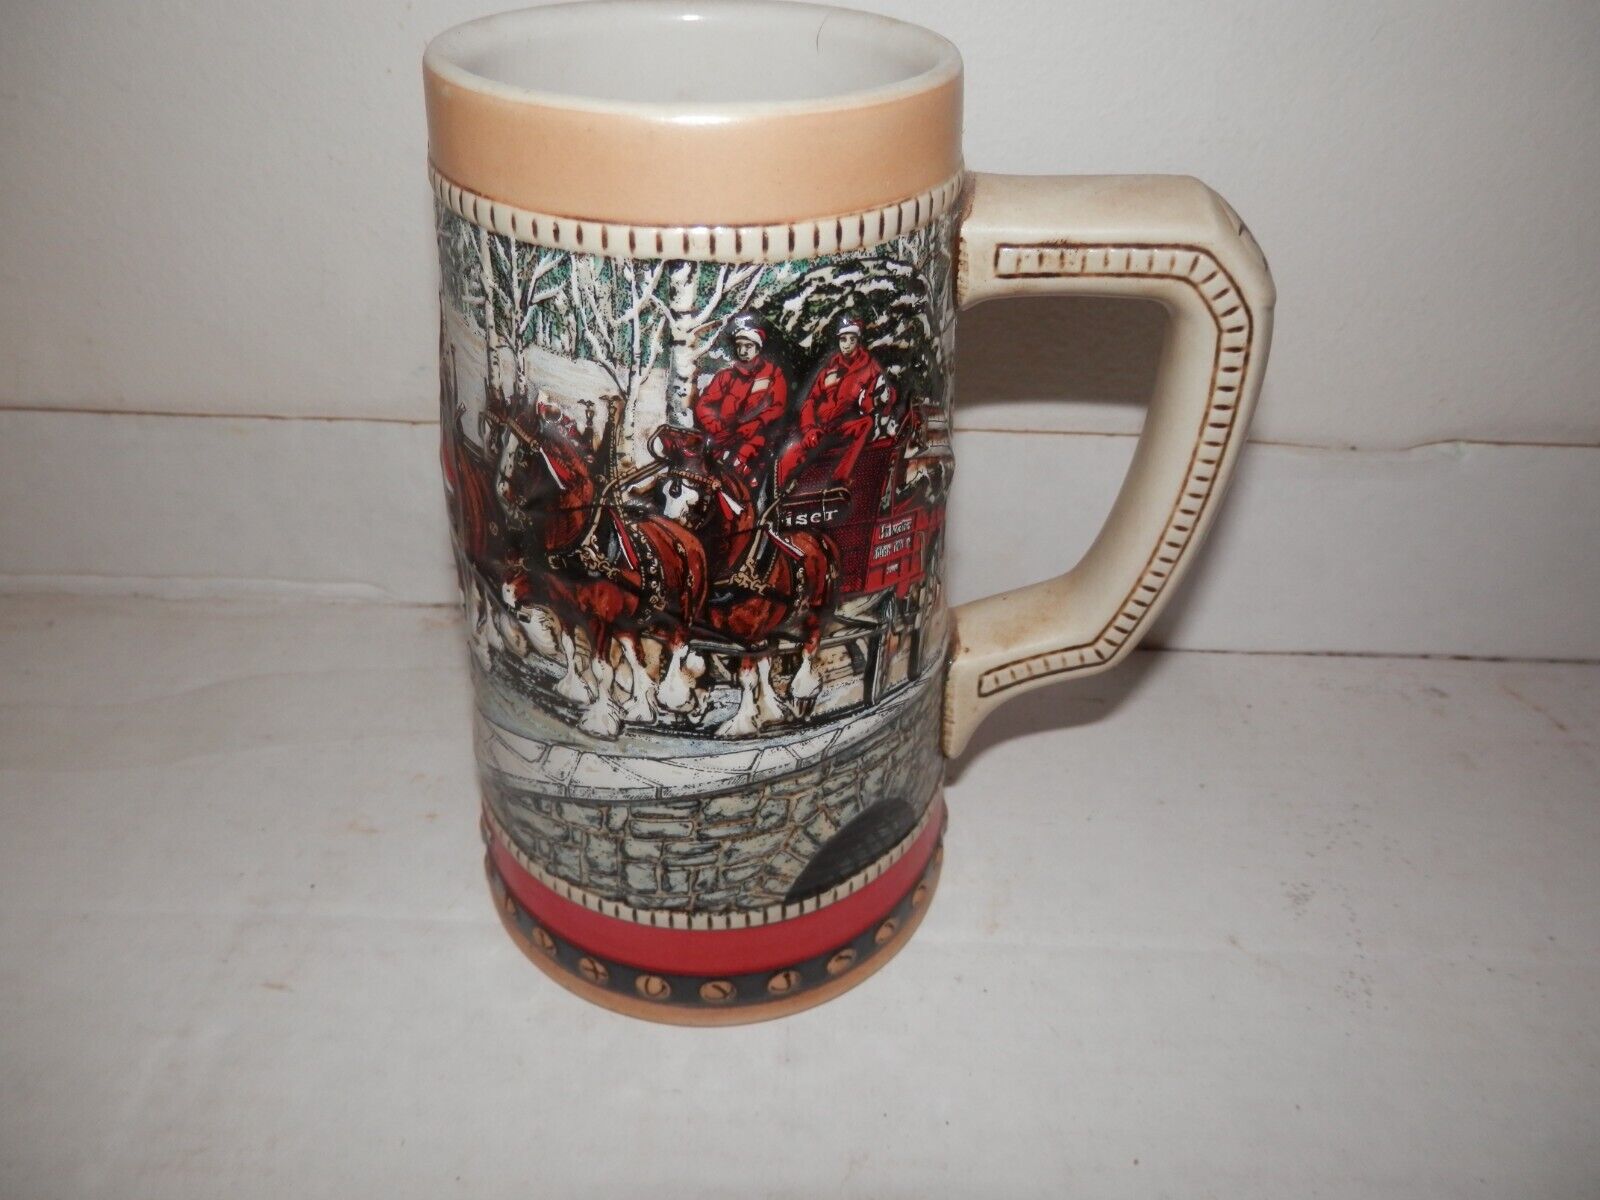 1988 collectors series beer mug